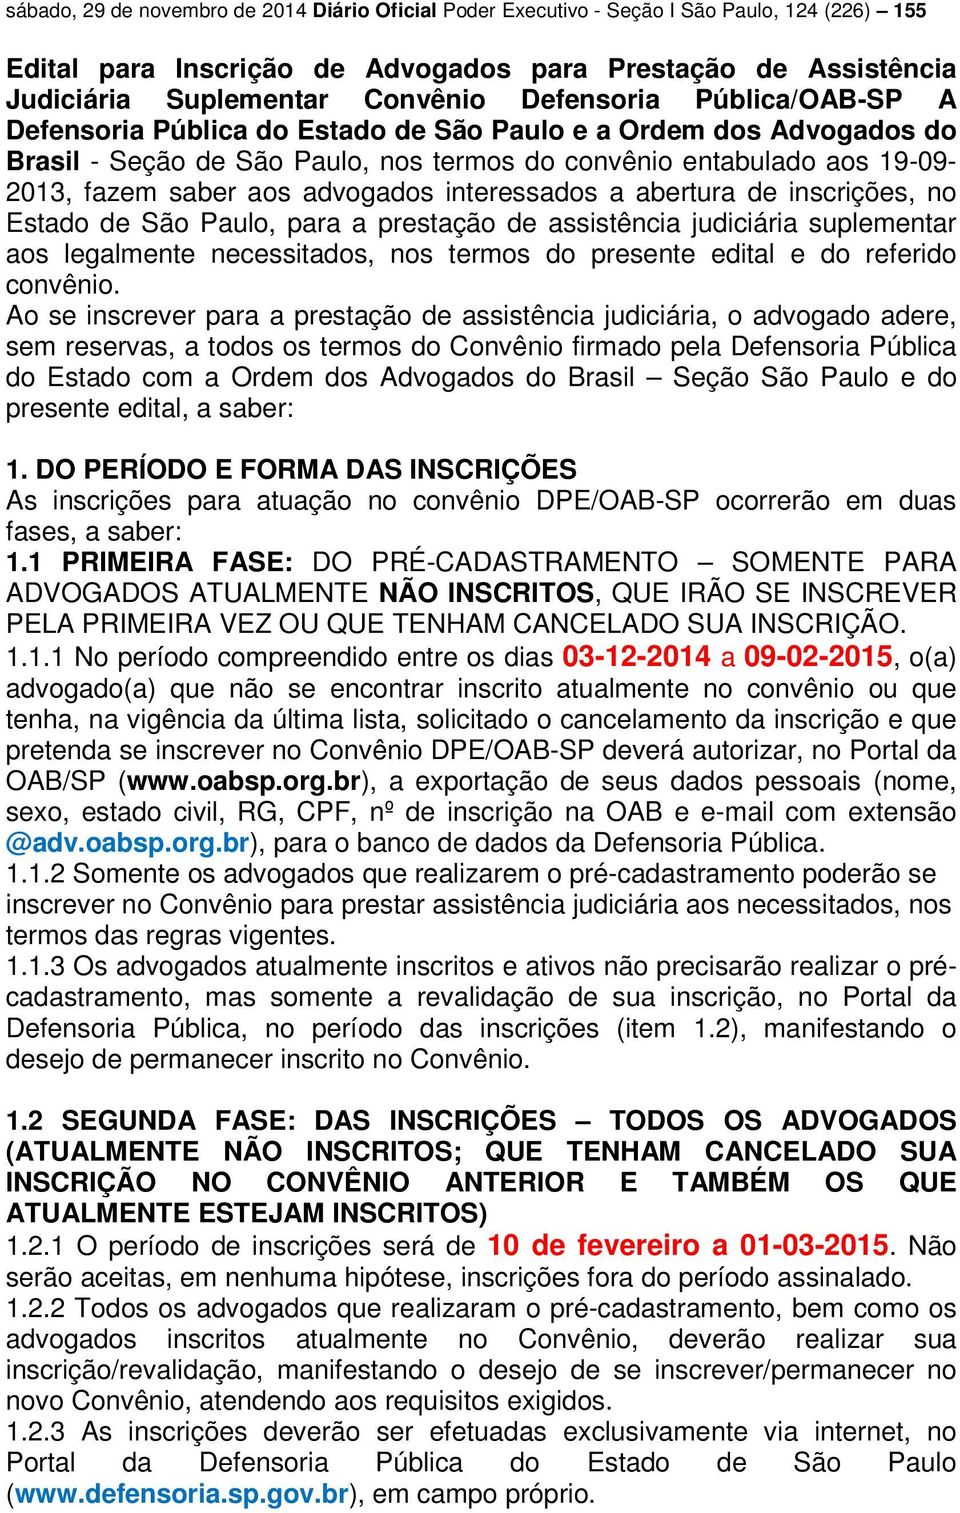 advogados interessados a abertura de inscrições, no Estado de São Paulo, para a prestação de assistência judiciária suplementar aos legalmente necessitados, nos termos do presente edital e do